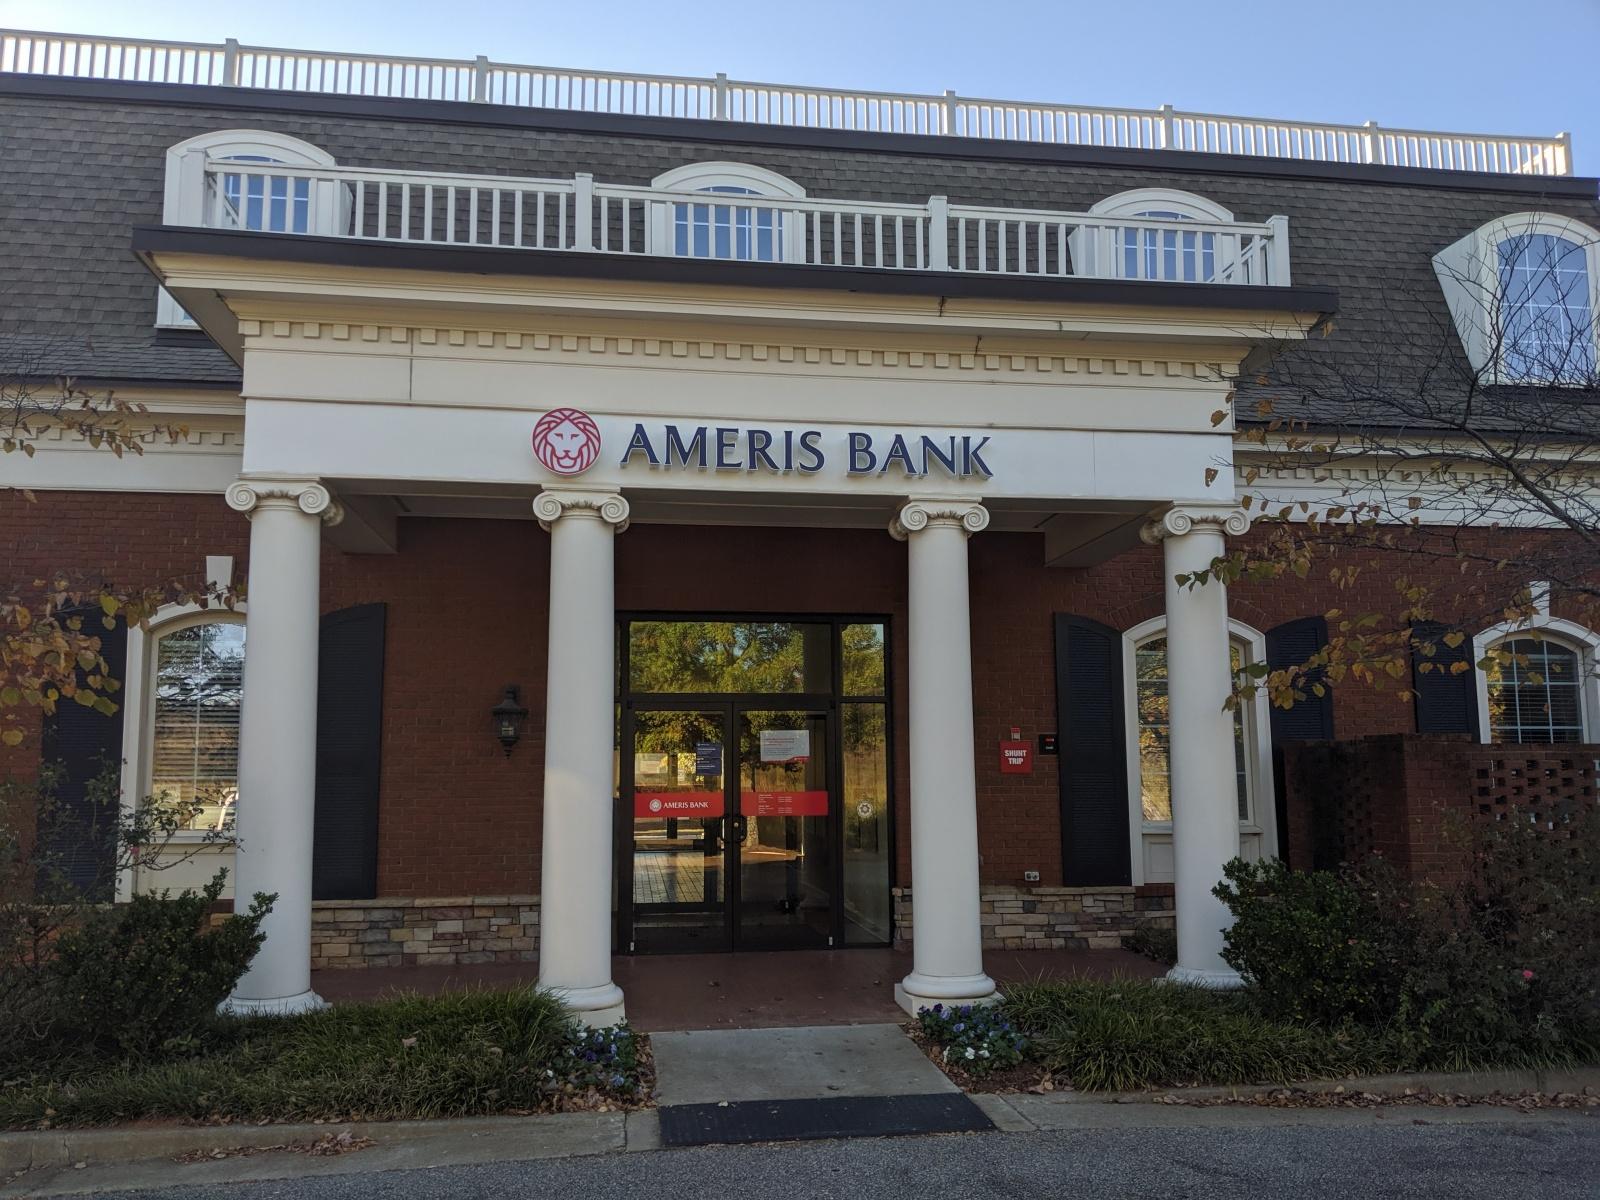 Ameris Bank Signage